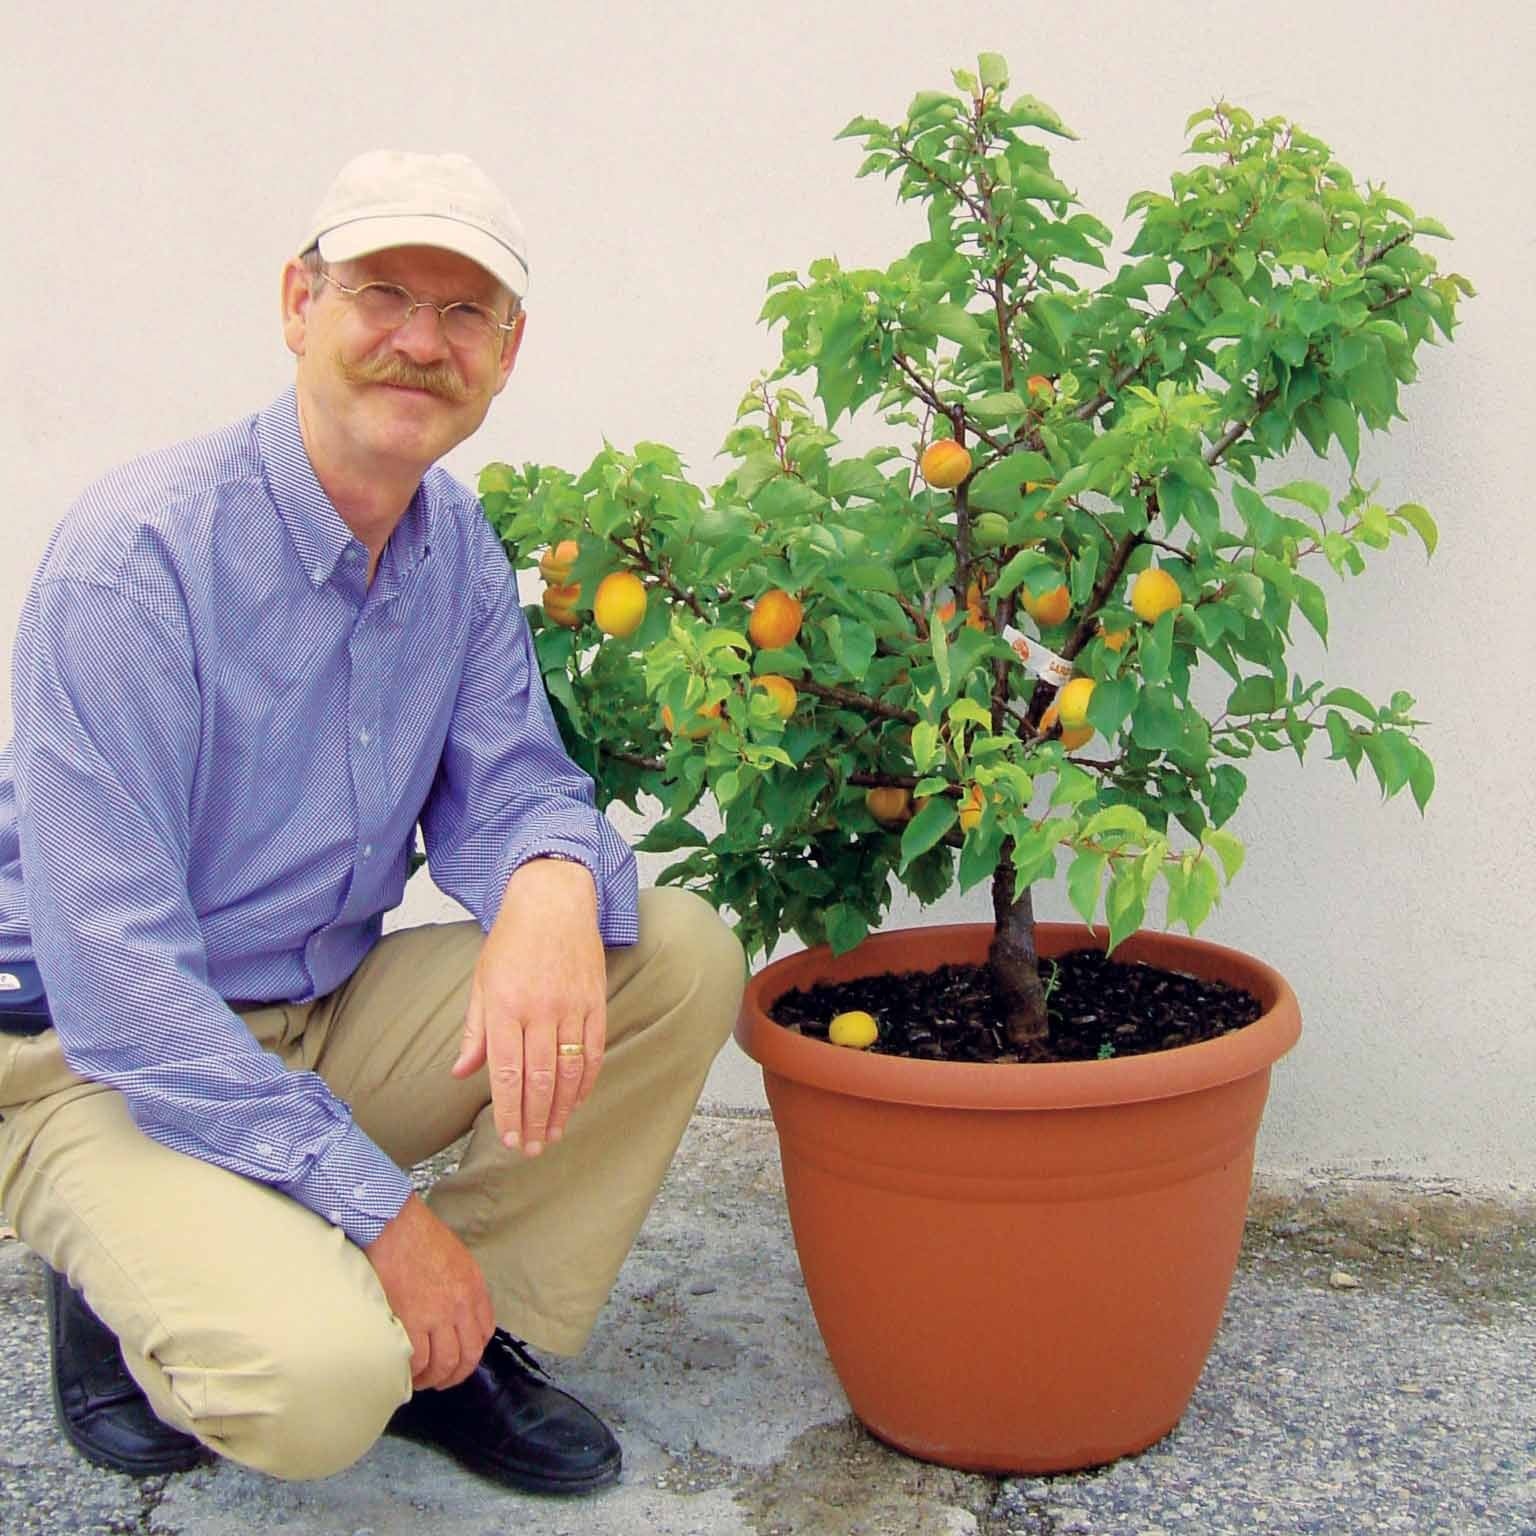 Mini-Aprikosenbaum - Prunus armeniaca Aprigold